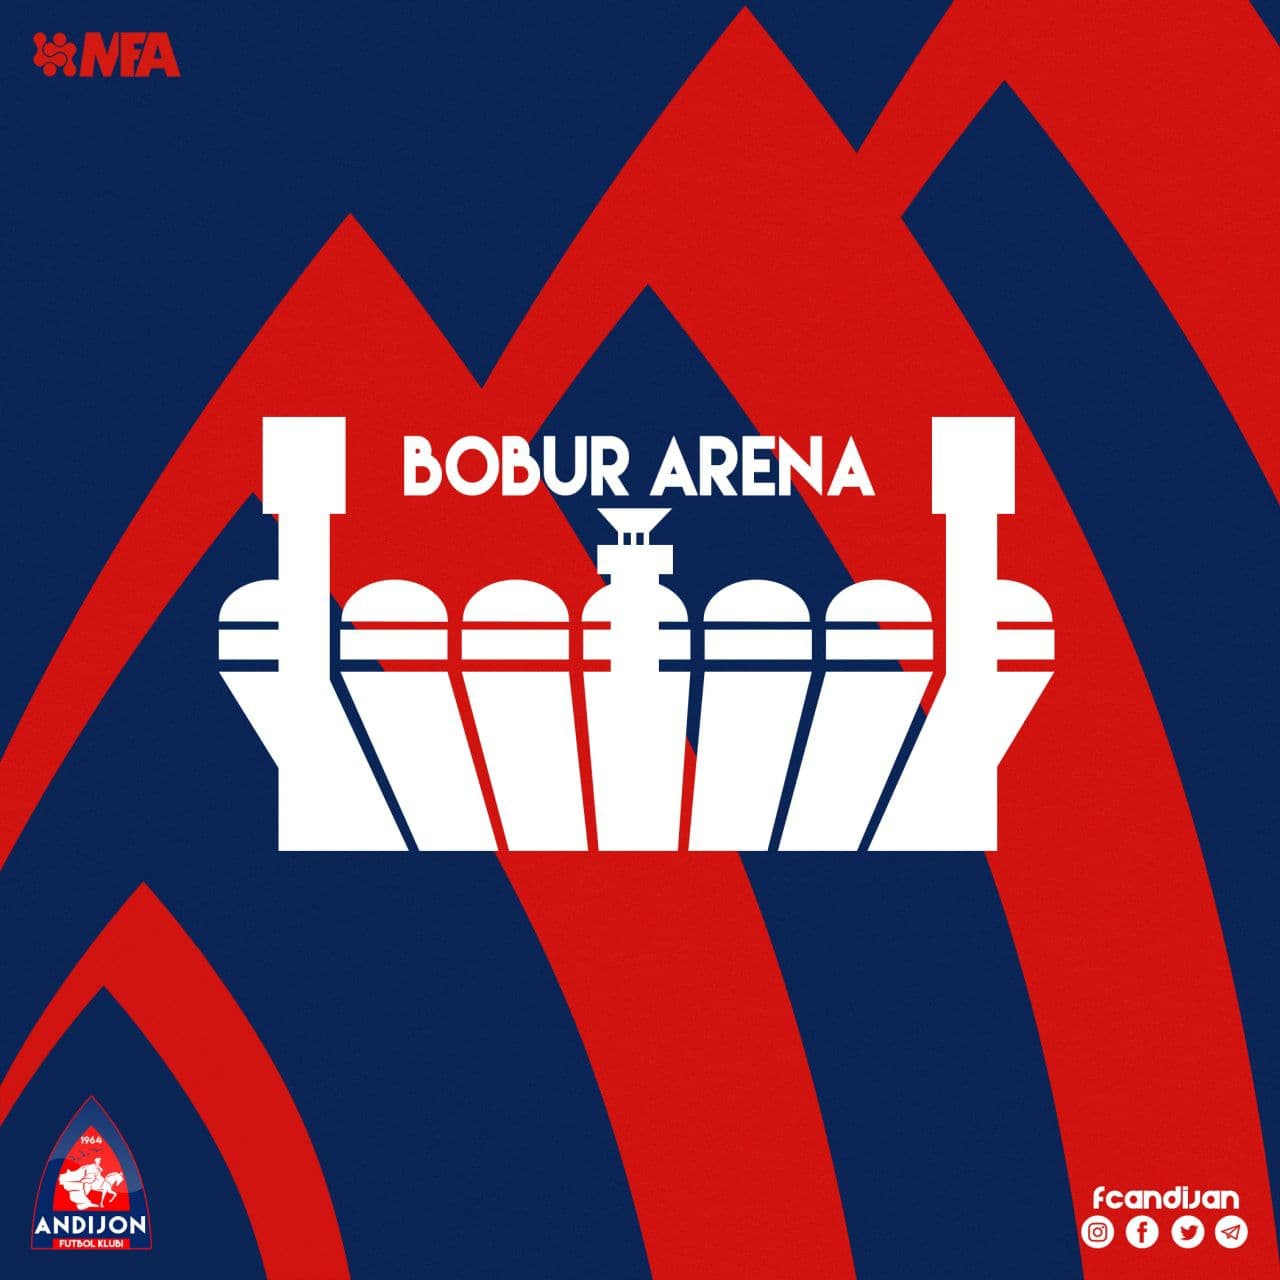 Bobur Arena